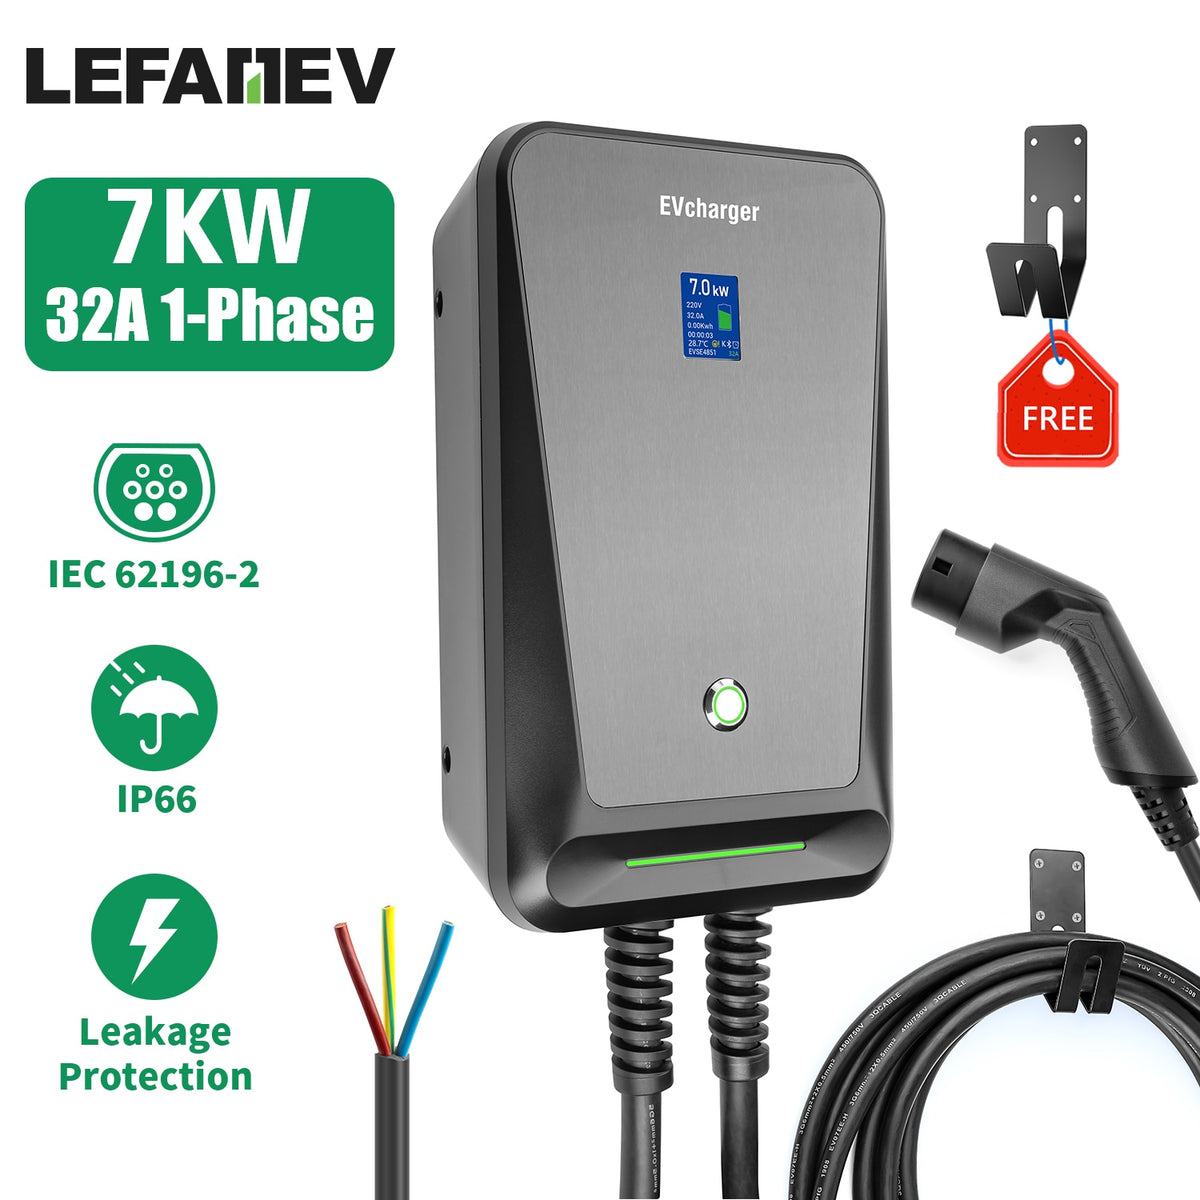 Ozvavzk Wallbox Support de Chargeur EV véhicule Electrique Type 2  Organiseur de Câble de Chargement, Enrouleur pour Voiture électrique à Un connecteur  IEC 62196-2